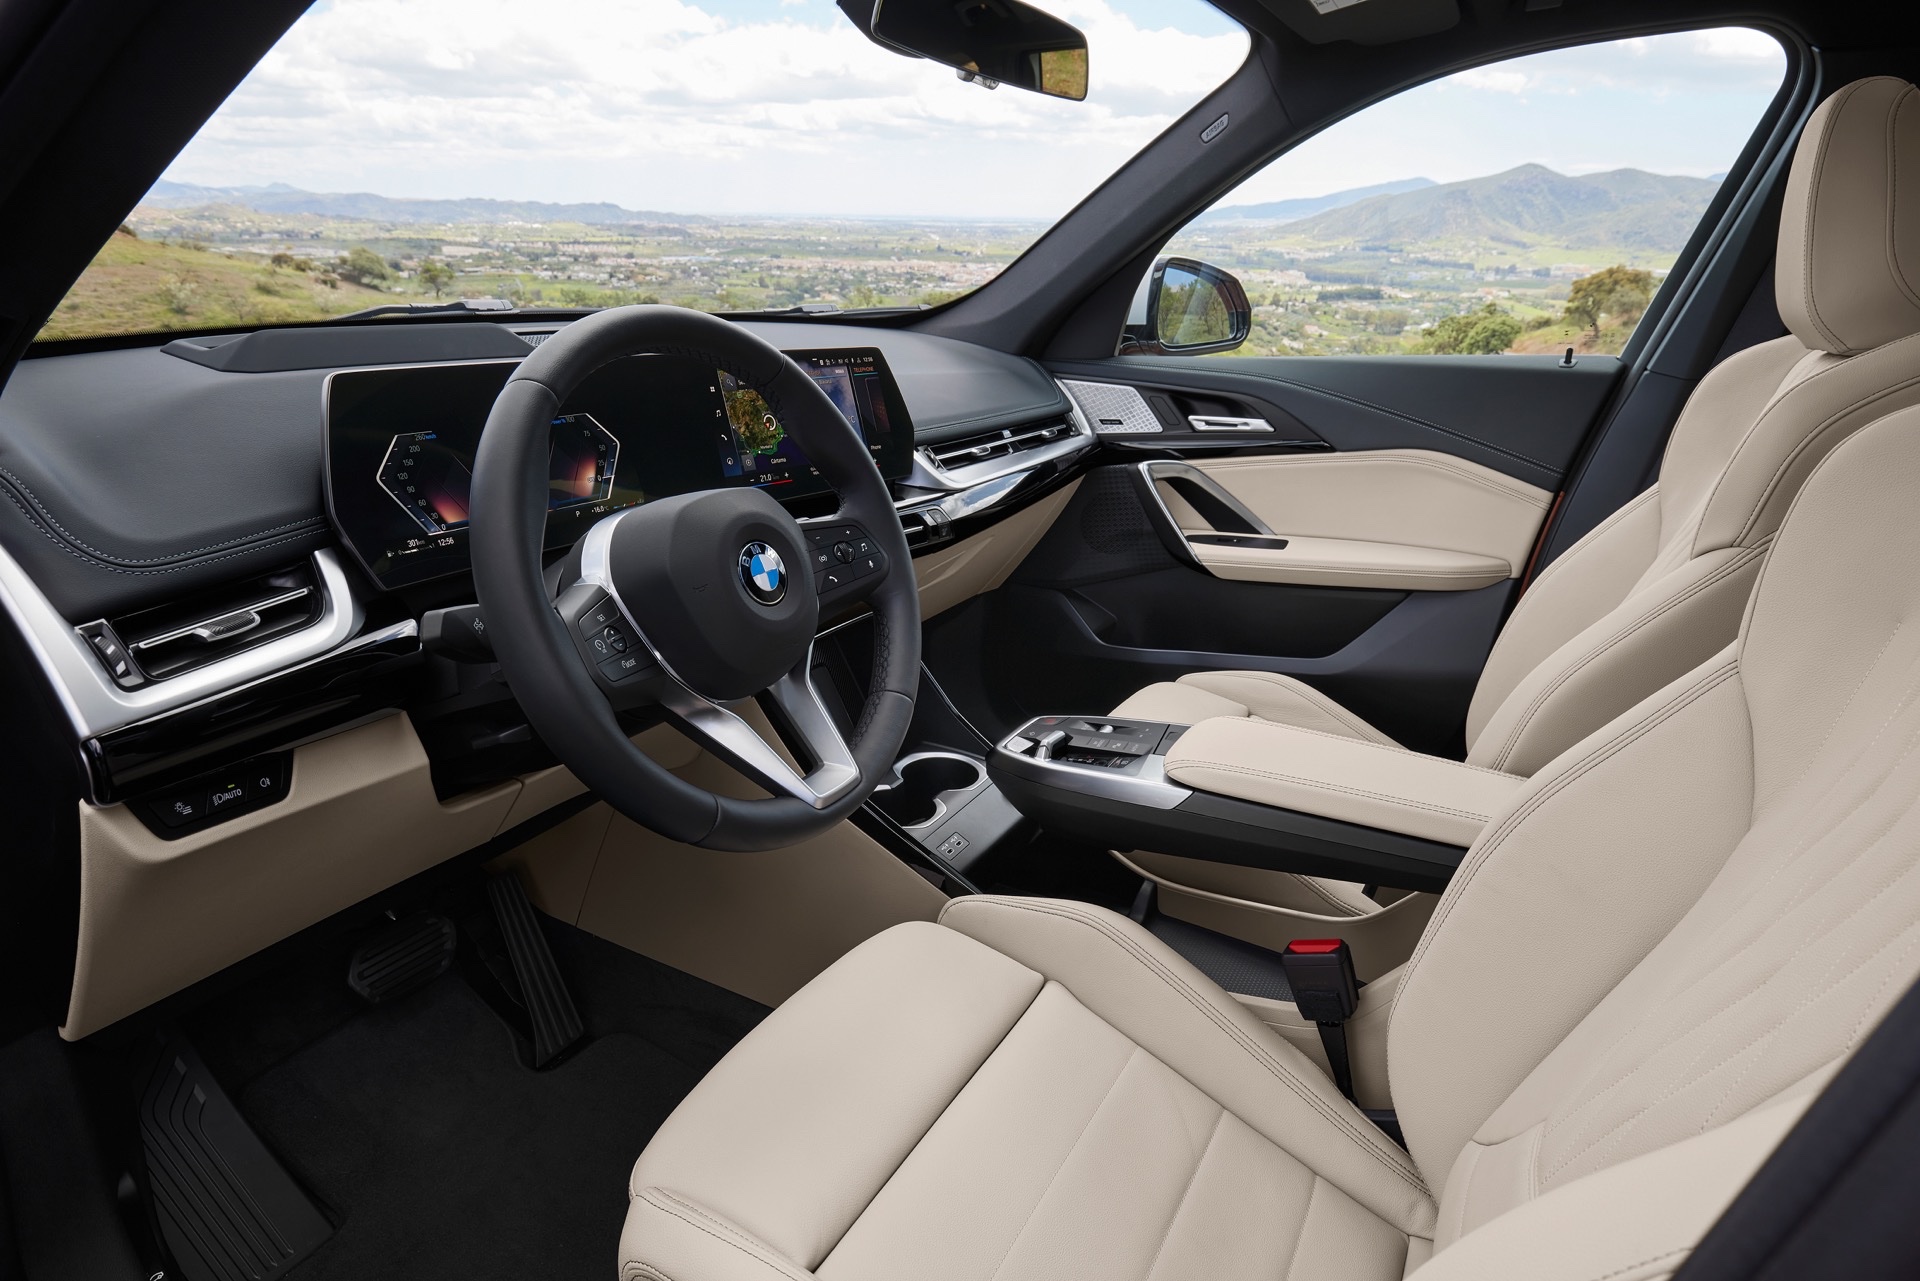 2023 BMW X1 resim galerisi (01.06.2022)